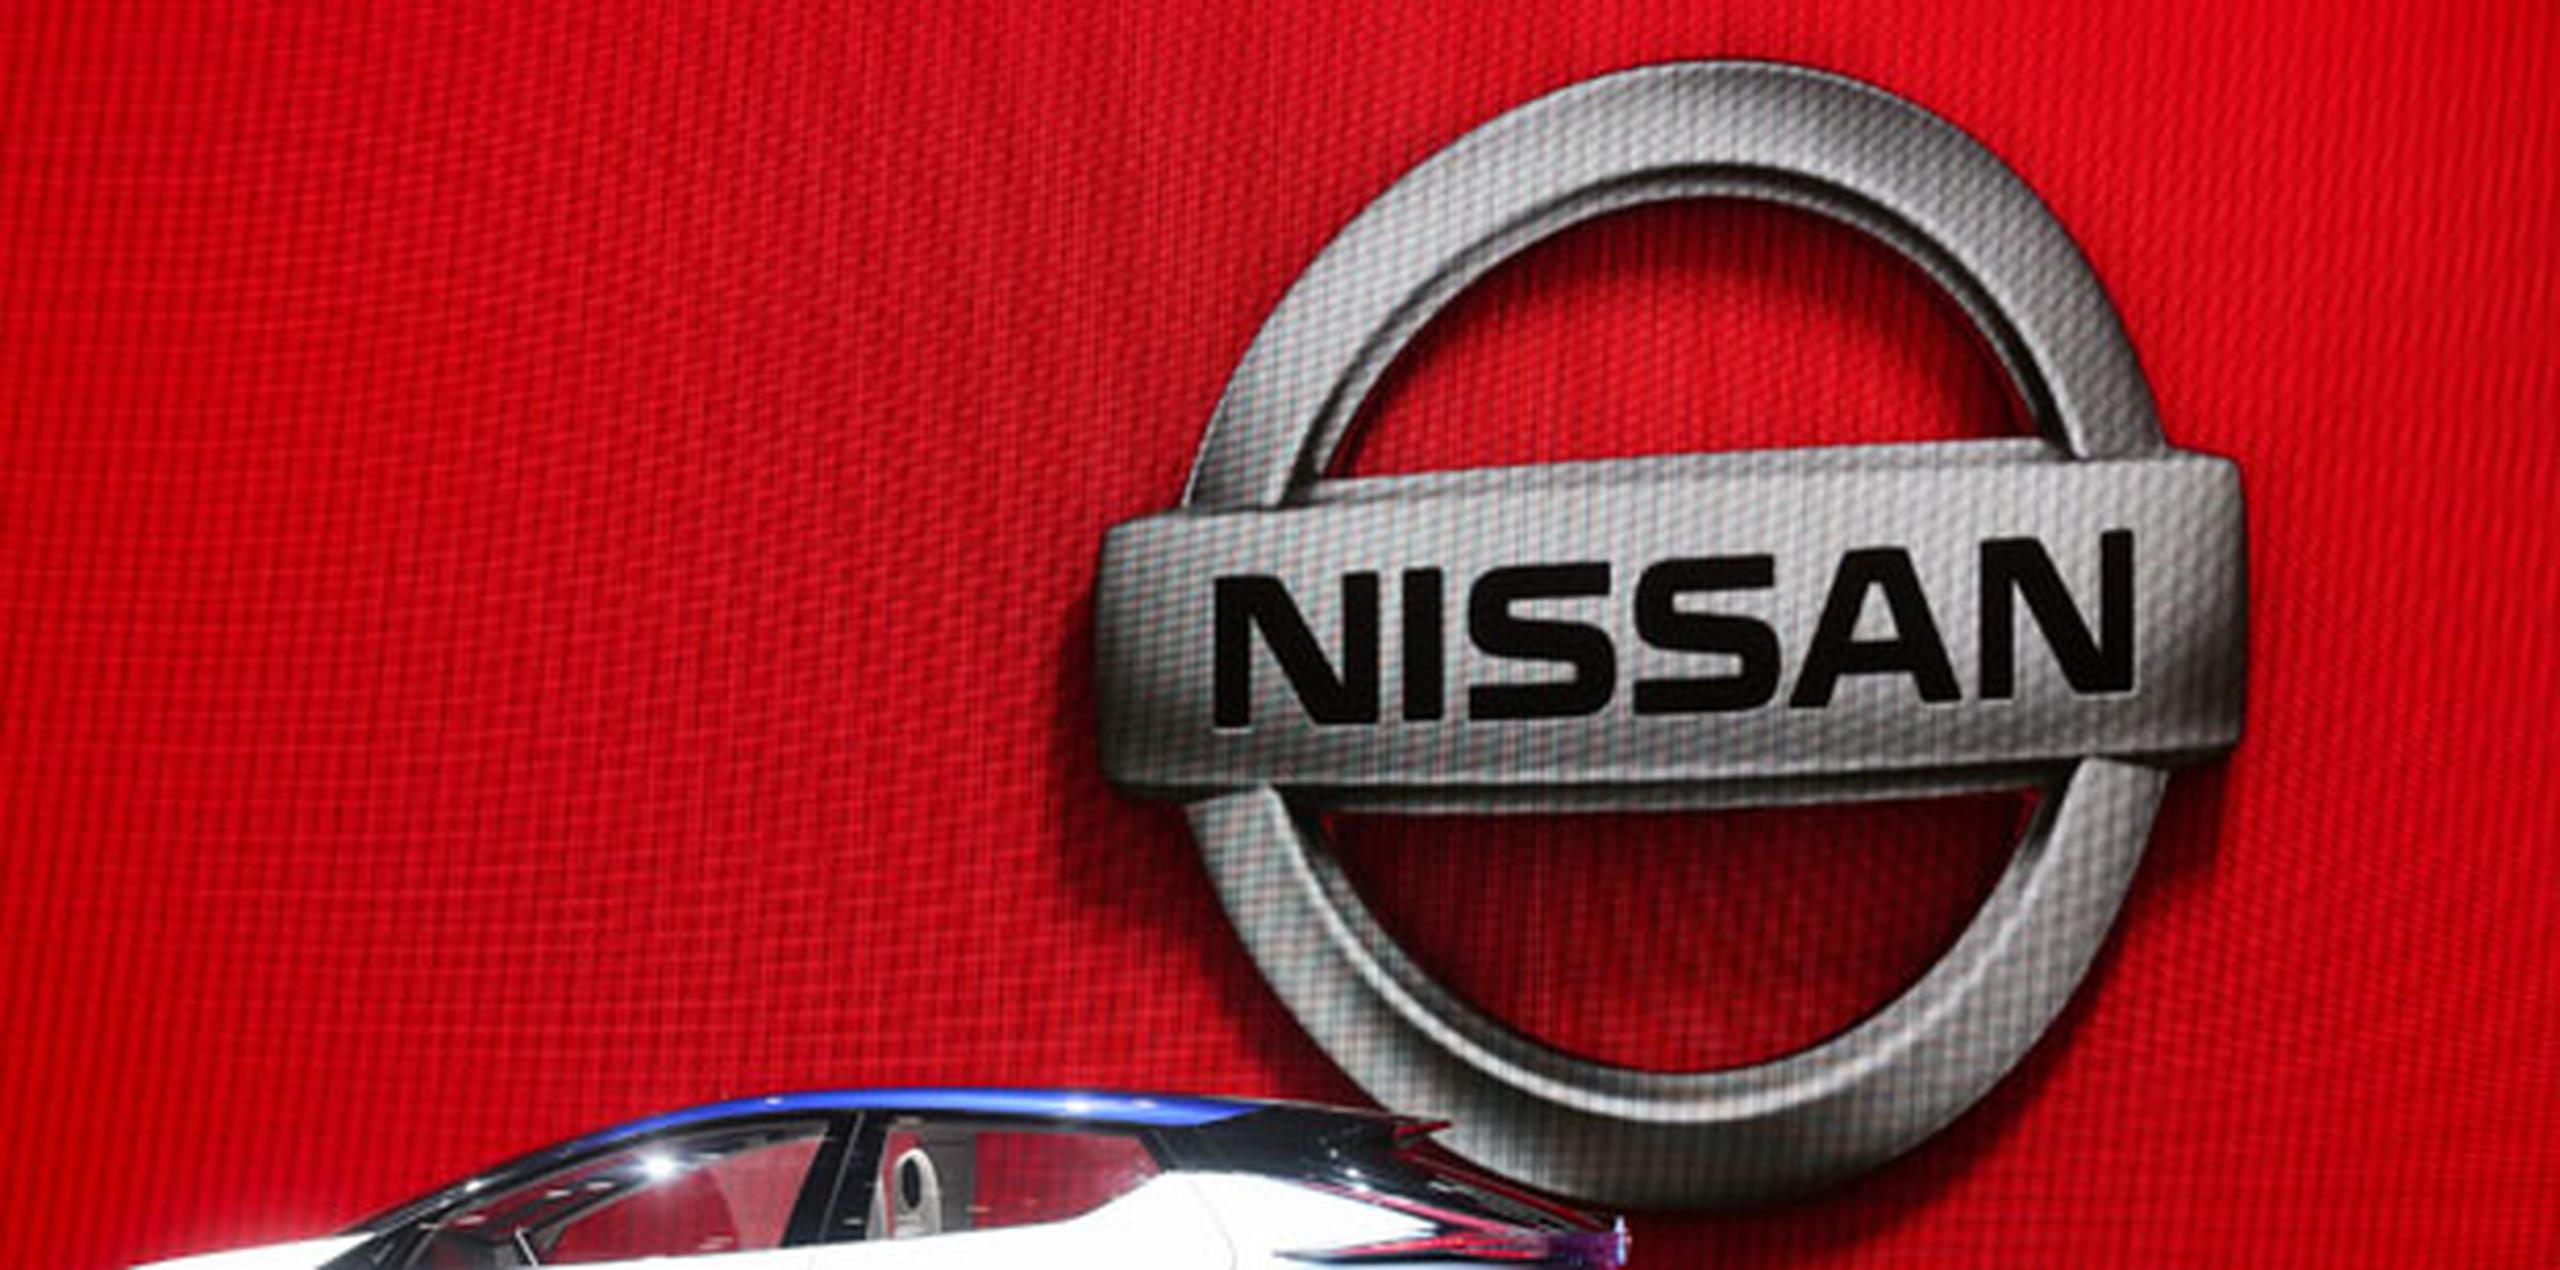 Nissan no ha recibido informes de accidentes o lesiones. La automotriz avisará a los propietarios que necesitan reparaciones. (Archivo)